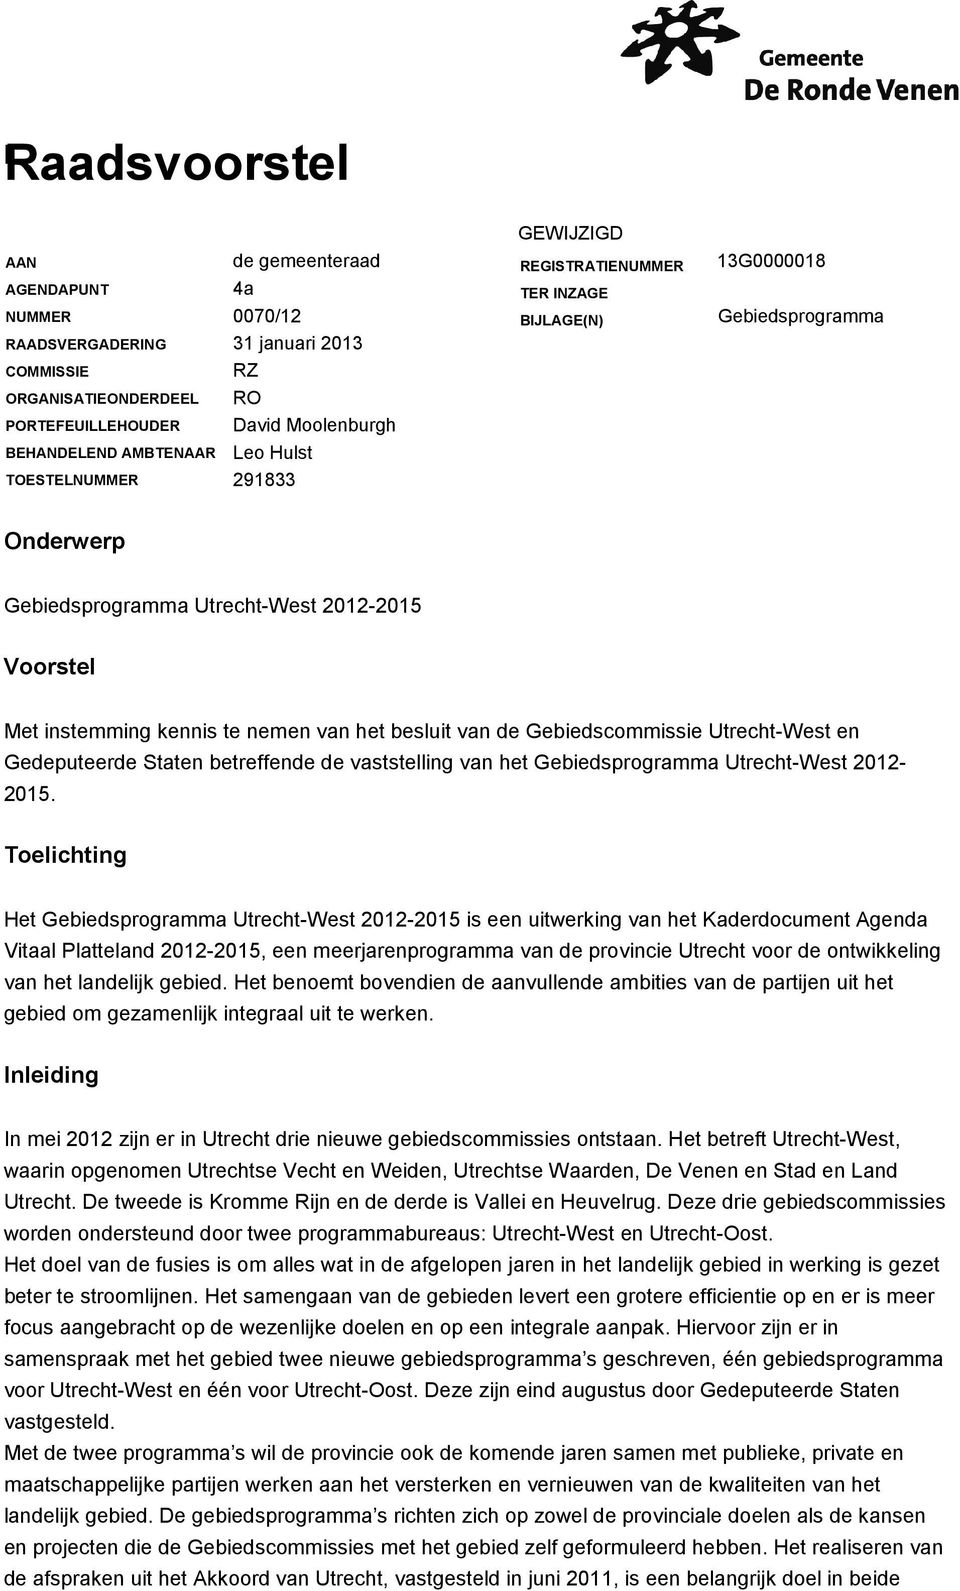 kennis te nemen van het besluit van de Gebiedscommissie Utrecht-West en Gedeputeerde Staten betreffende de vaststelling van het Gebiedsprogramma Utrecht-West 2012-2015.